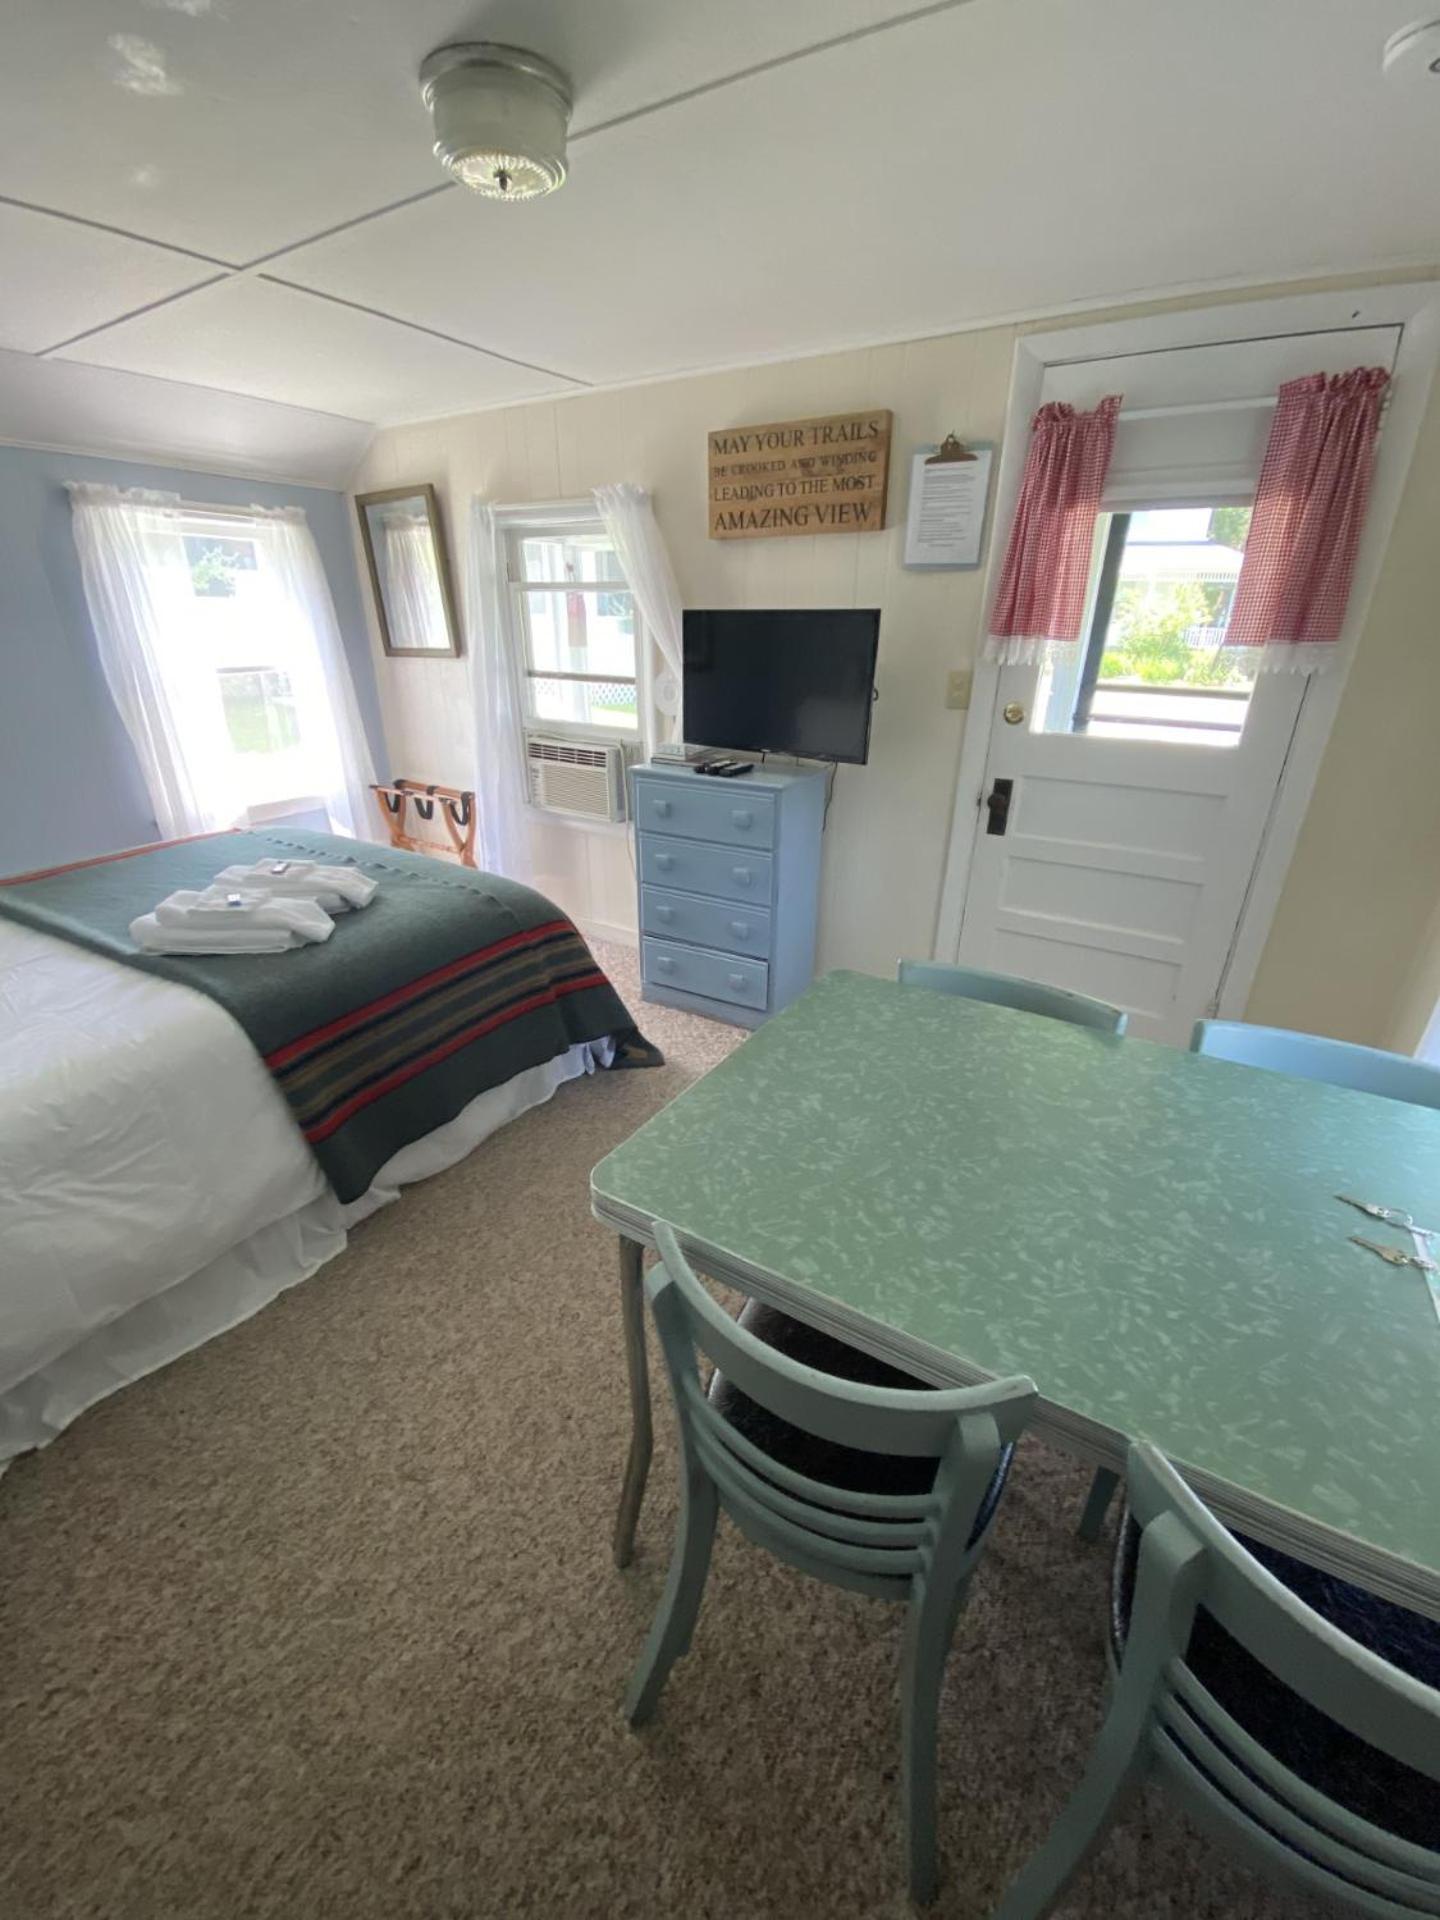 Bar Harbor Cottages & Suites Exterior photo